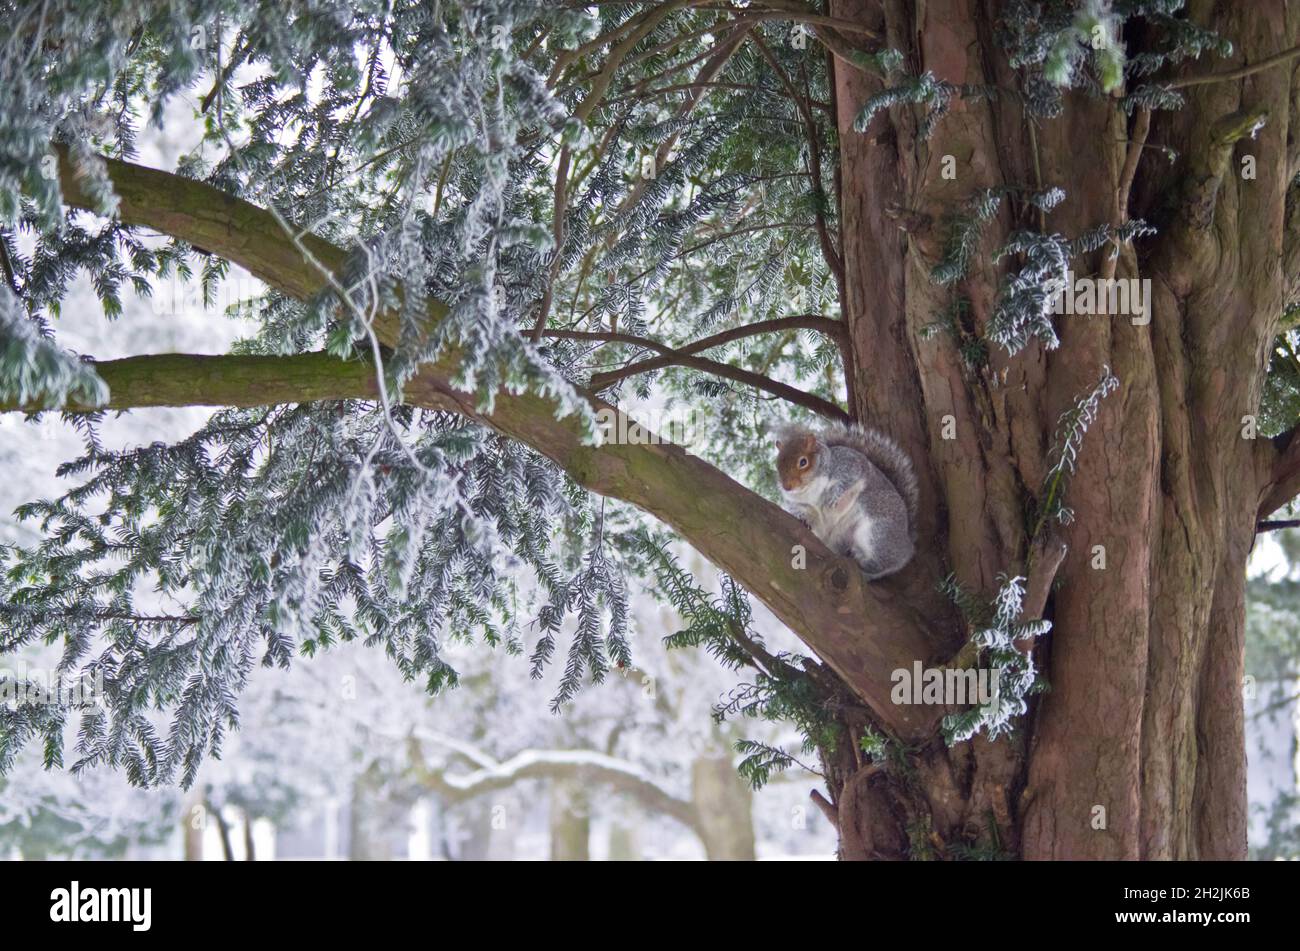 Ein Eichhörnchen nimmt Schutz vor dem Schnee in der Gabel eines Baumes, der in Grove House Gardens, Dunstable, Bedfordshire, Großbritannien, aufgenommen wurde Stockfoto